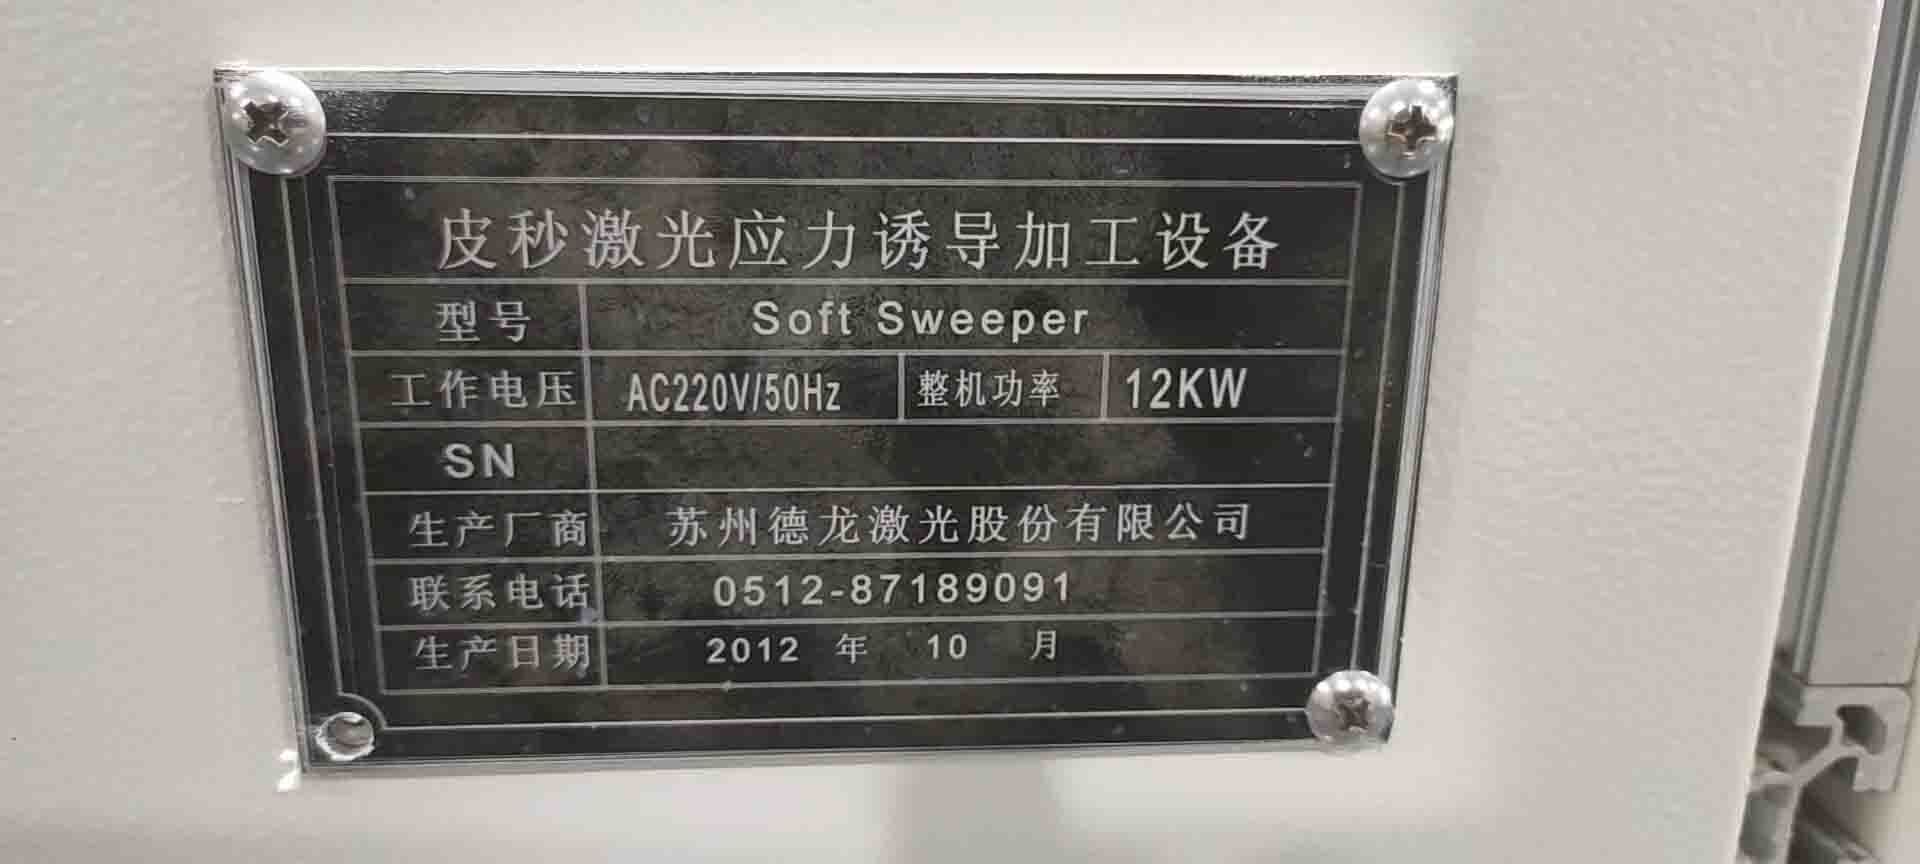 사진 사용됨 SUZHOU Soft Sweeper 판매용